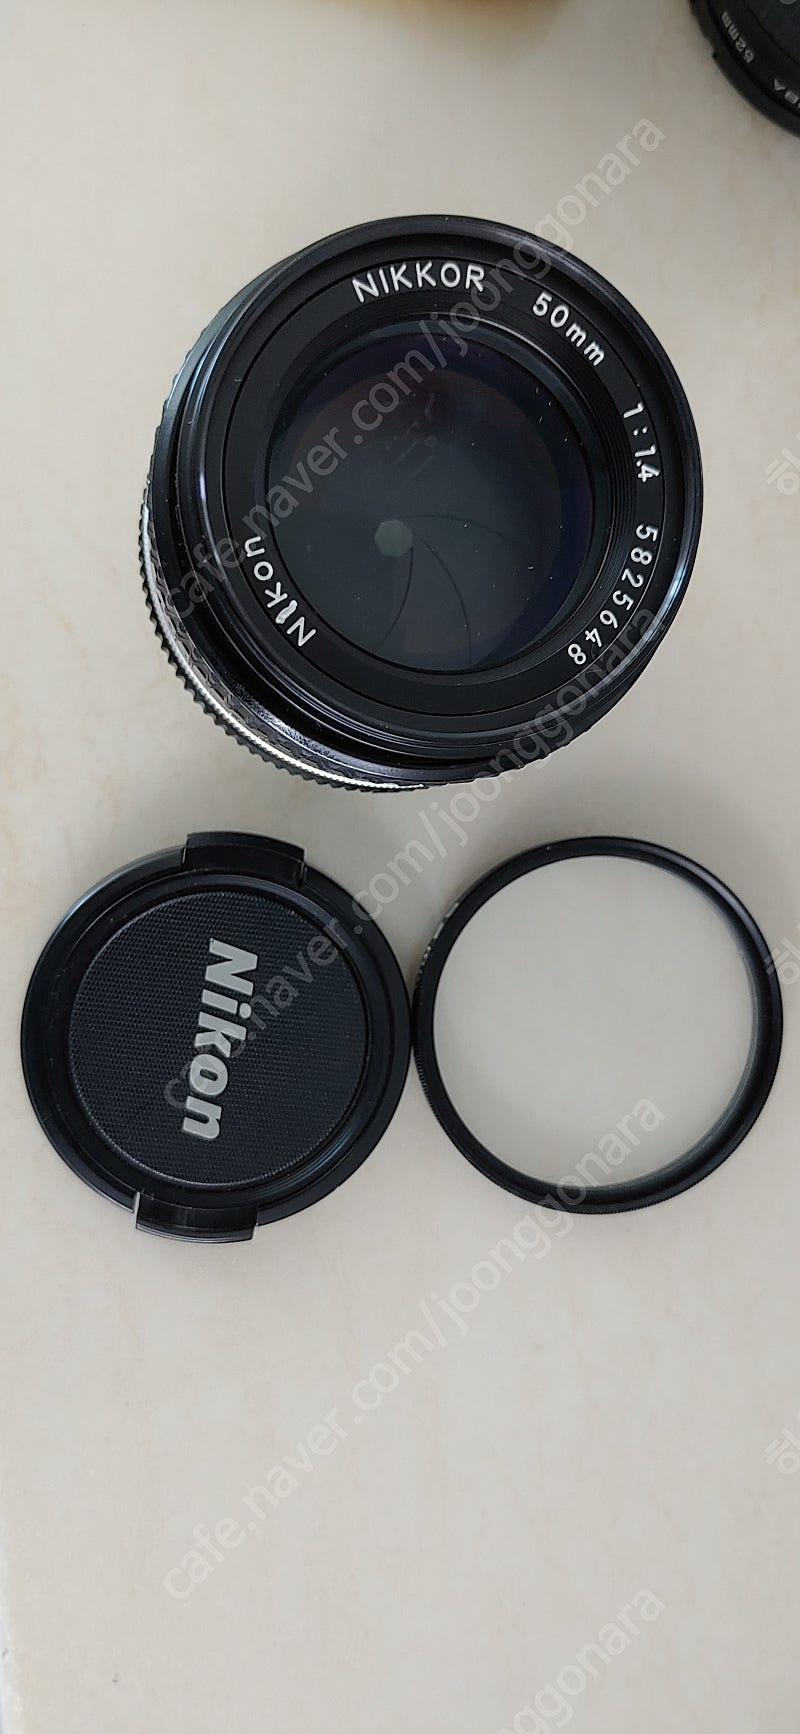 니콘 mf50mm f1.4 (수동 표준렌즈) 골라서 각개 및 세트 구입하세요!(상품추가)